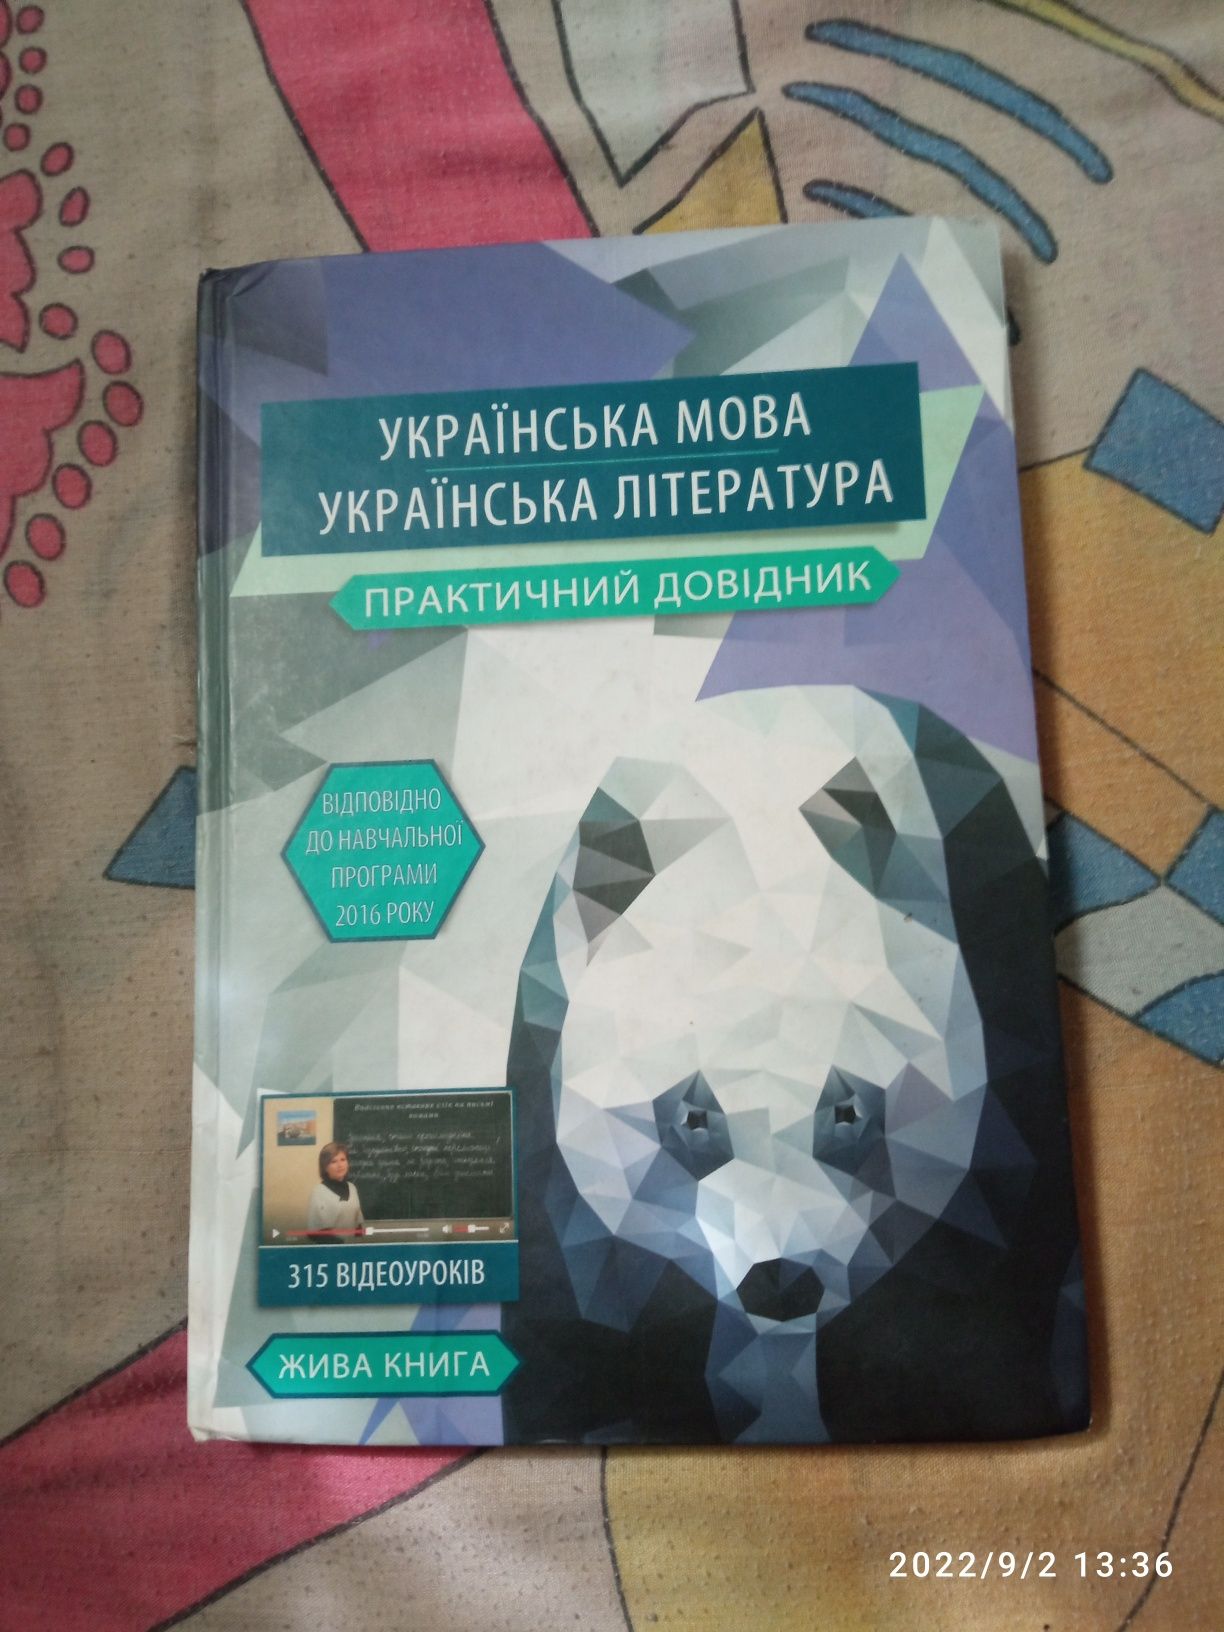 Жива книга Української мови та літератури